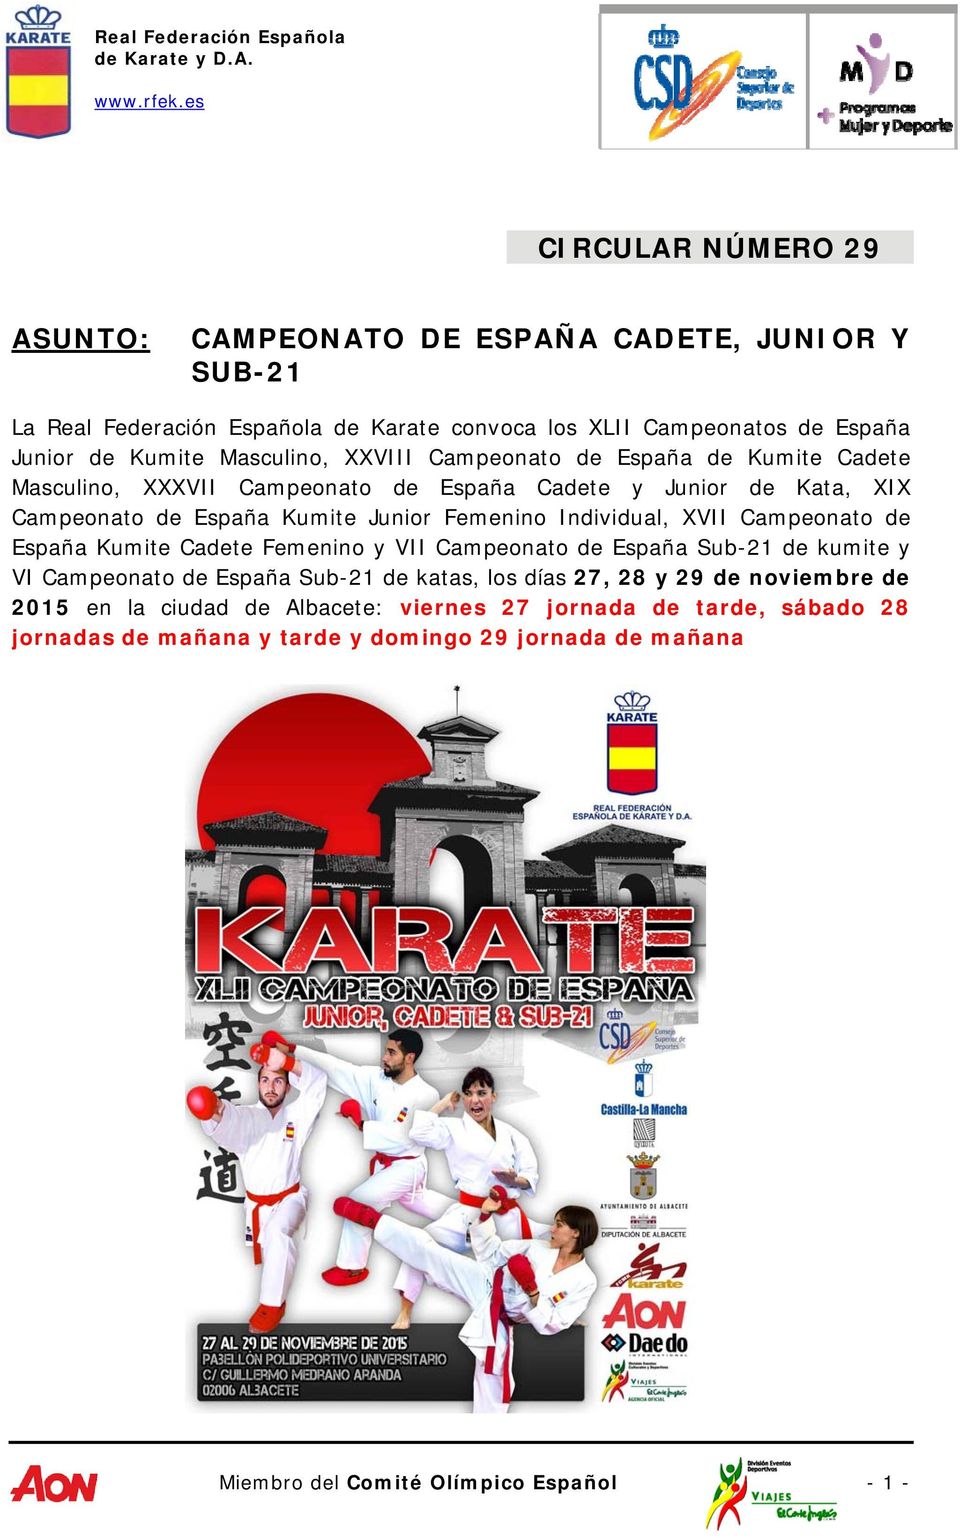 Individual, XVII Campeonato de España Kumite Cadete Femenino y VII Campeonato de España Sub-21 de kumite y VI Campeonato de España Sub-21 de katas, los días 27, 28 y 29 de